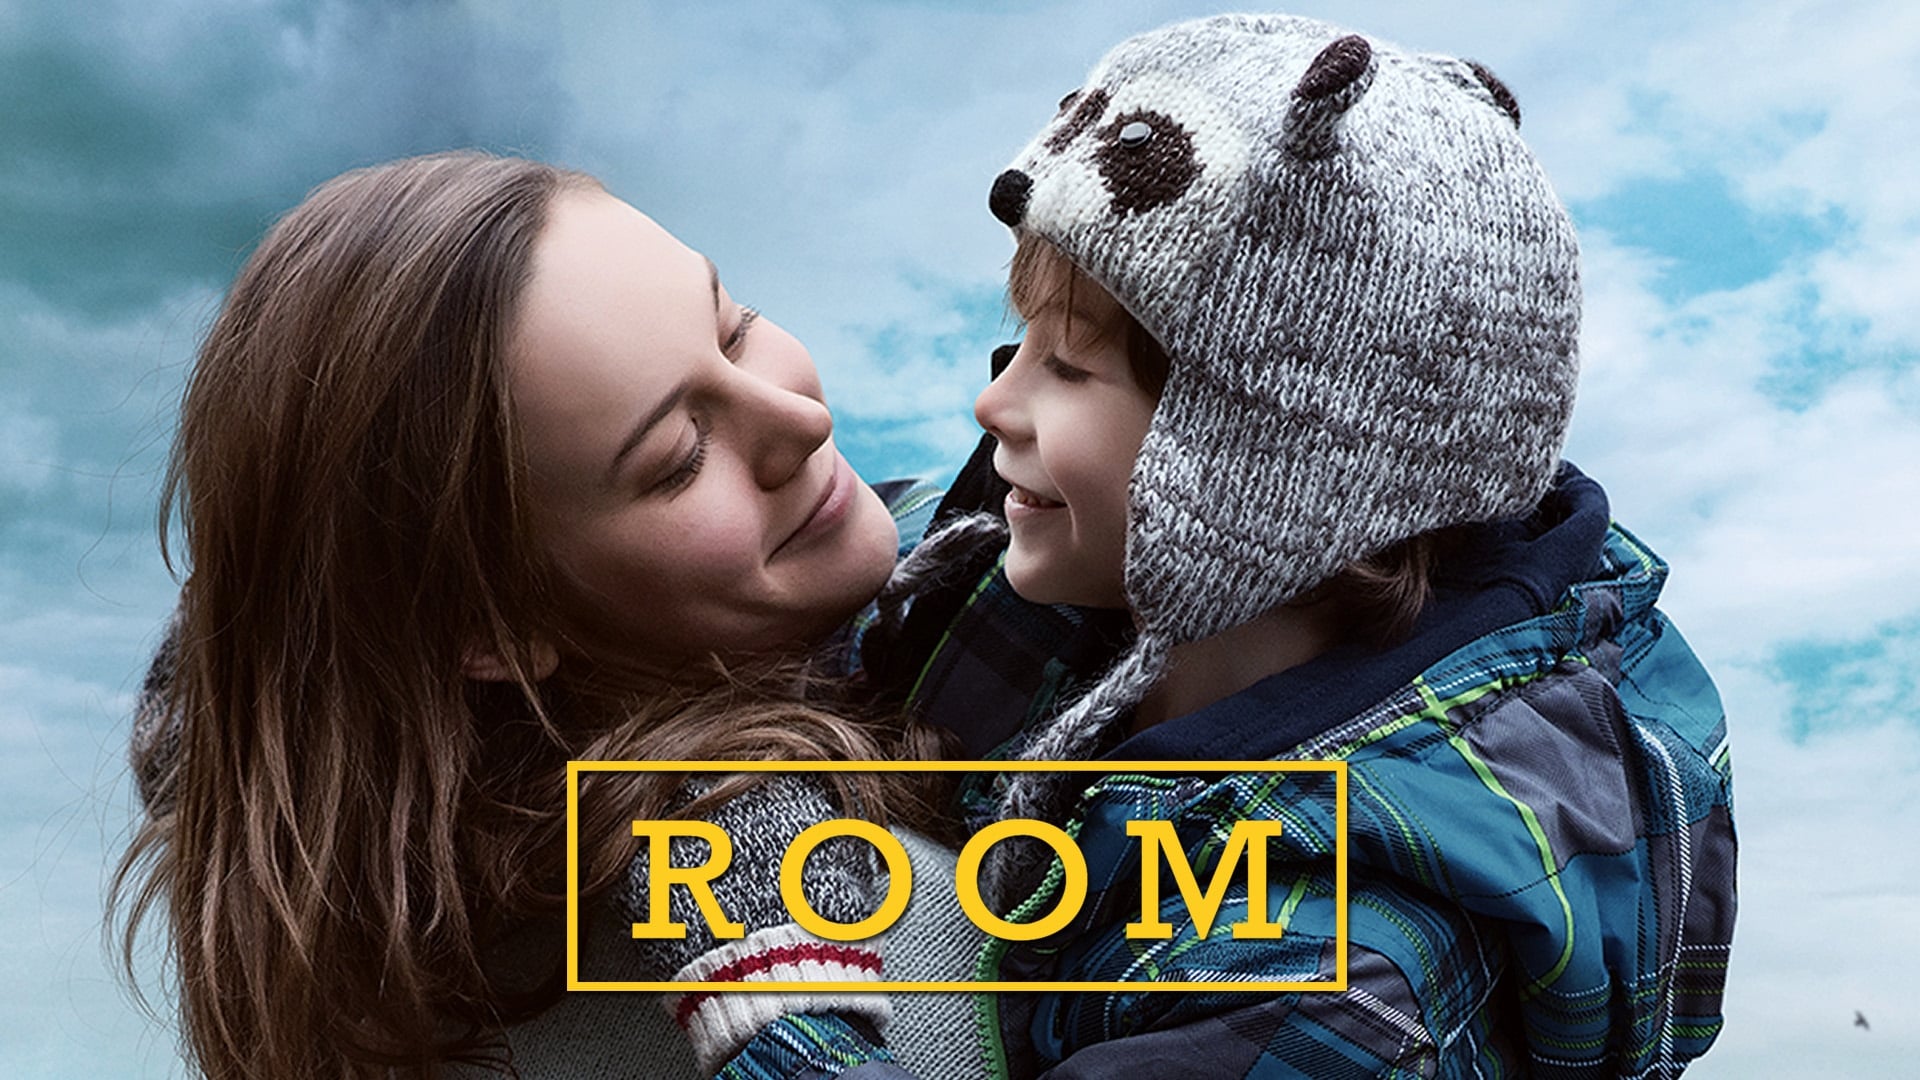 Room (2015)